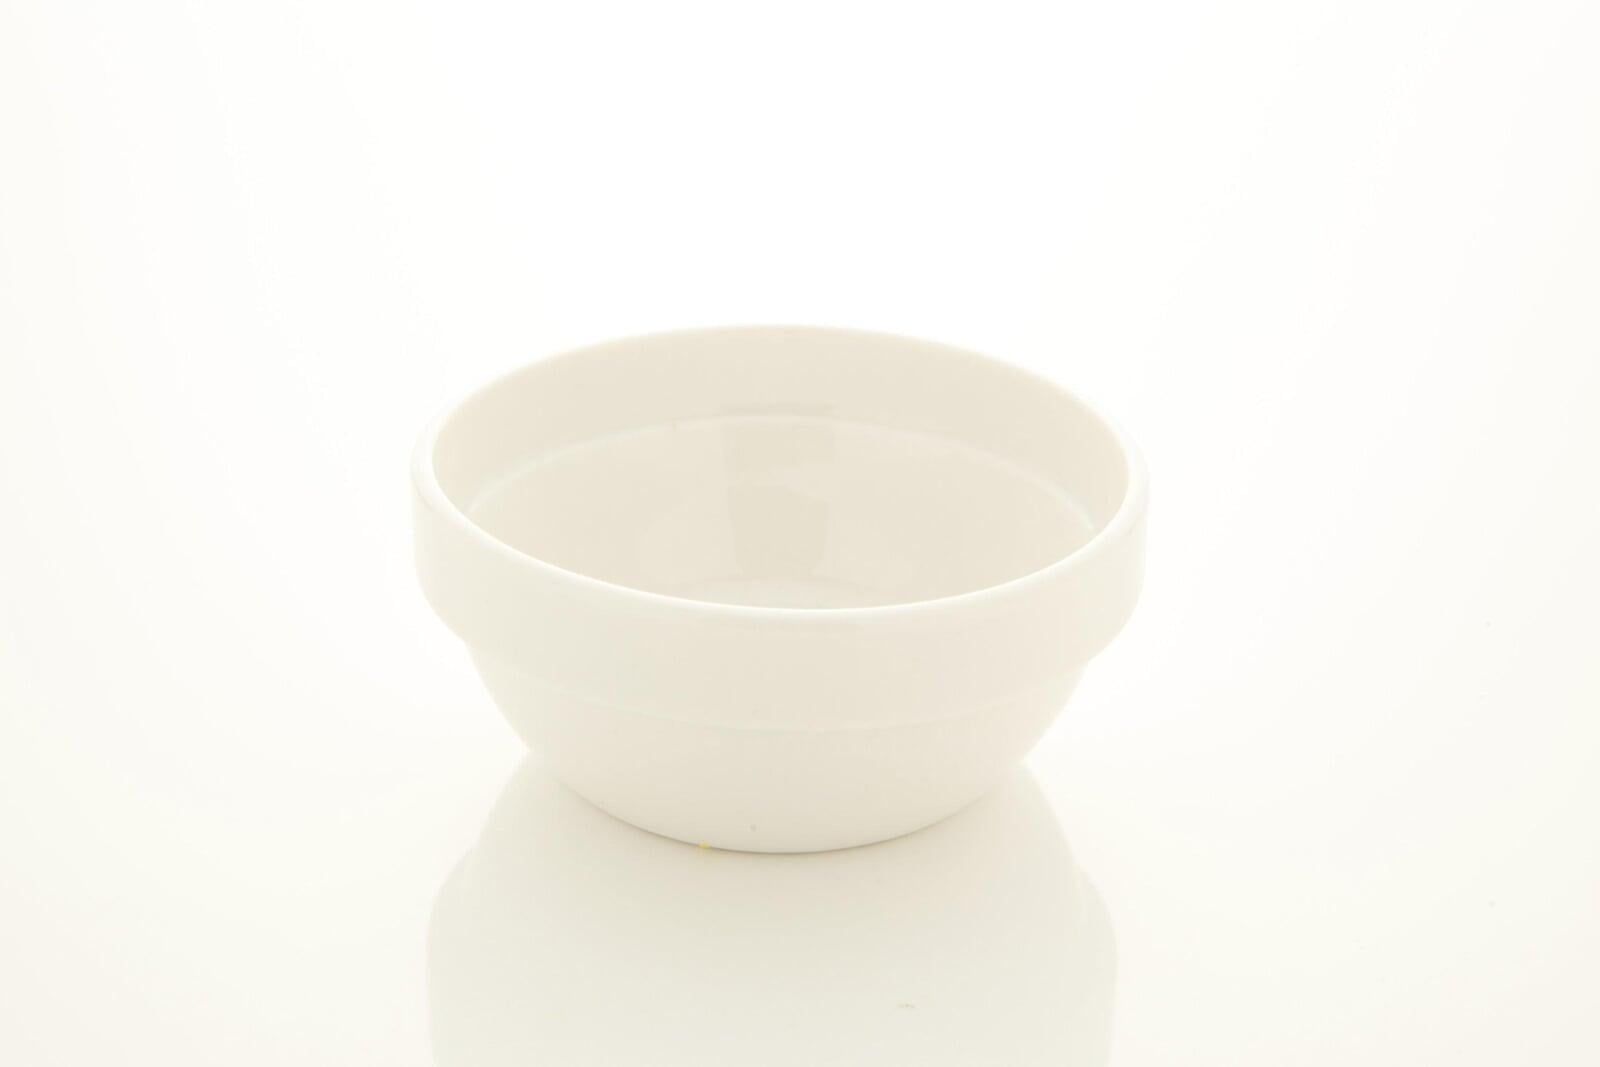 カップ - 陶器カップ 小鉢 小皿段あり 内径9cm*深さ4cm 白